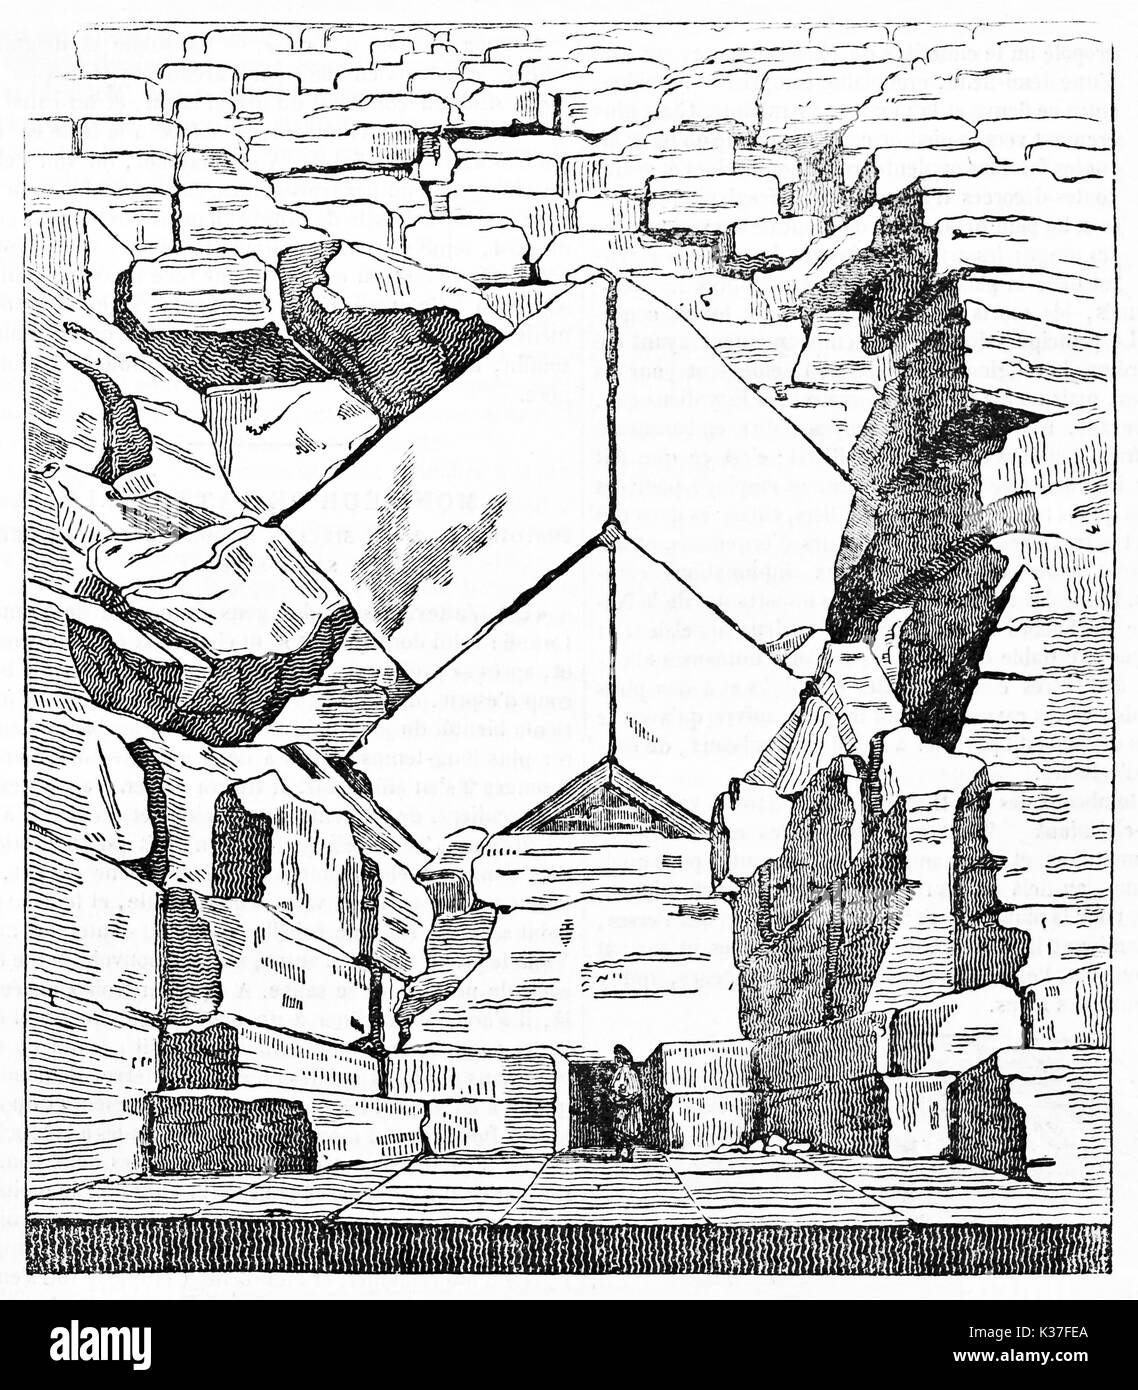 Alten majestätischen Blick auf den Eingang der Großen Pyramide von Gizeh Ägypten. Kleine person im Vergleich mit den Steinen groß. Alte Illustration von unbekannter Autor, Magasin Pittoresque Paris 1834 Stockfoto